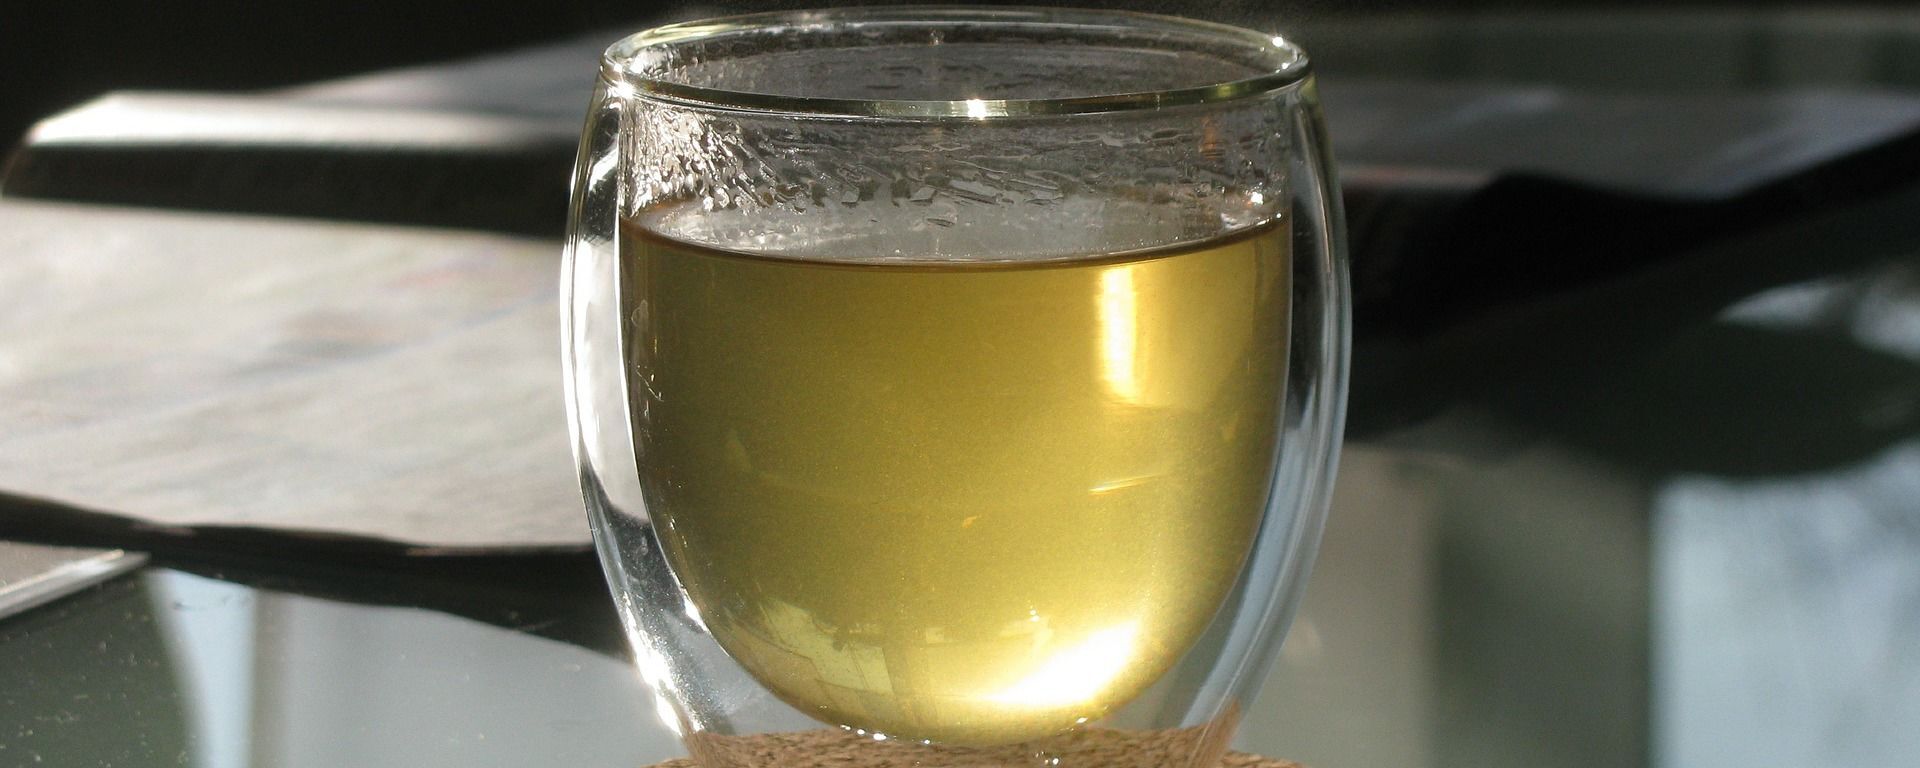 Un vaso de té (imagen referencial) - Sputnik Mundo, 1920, 09.01.2021